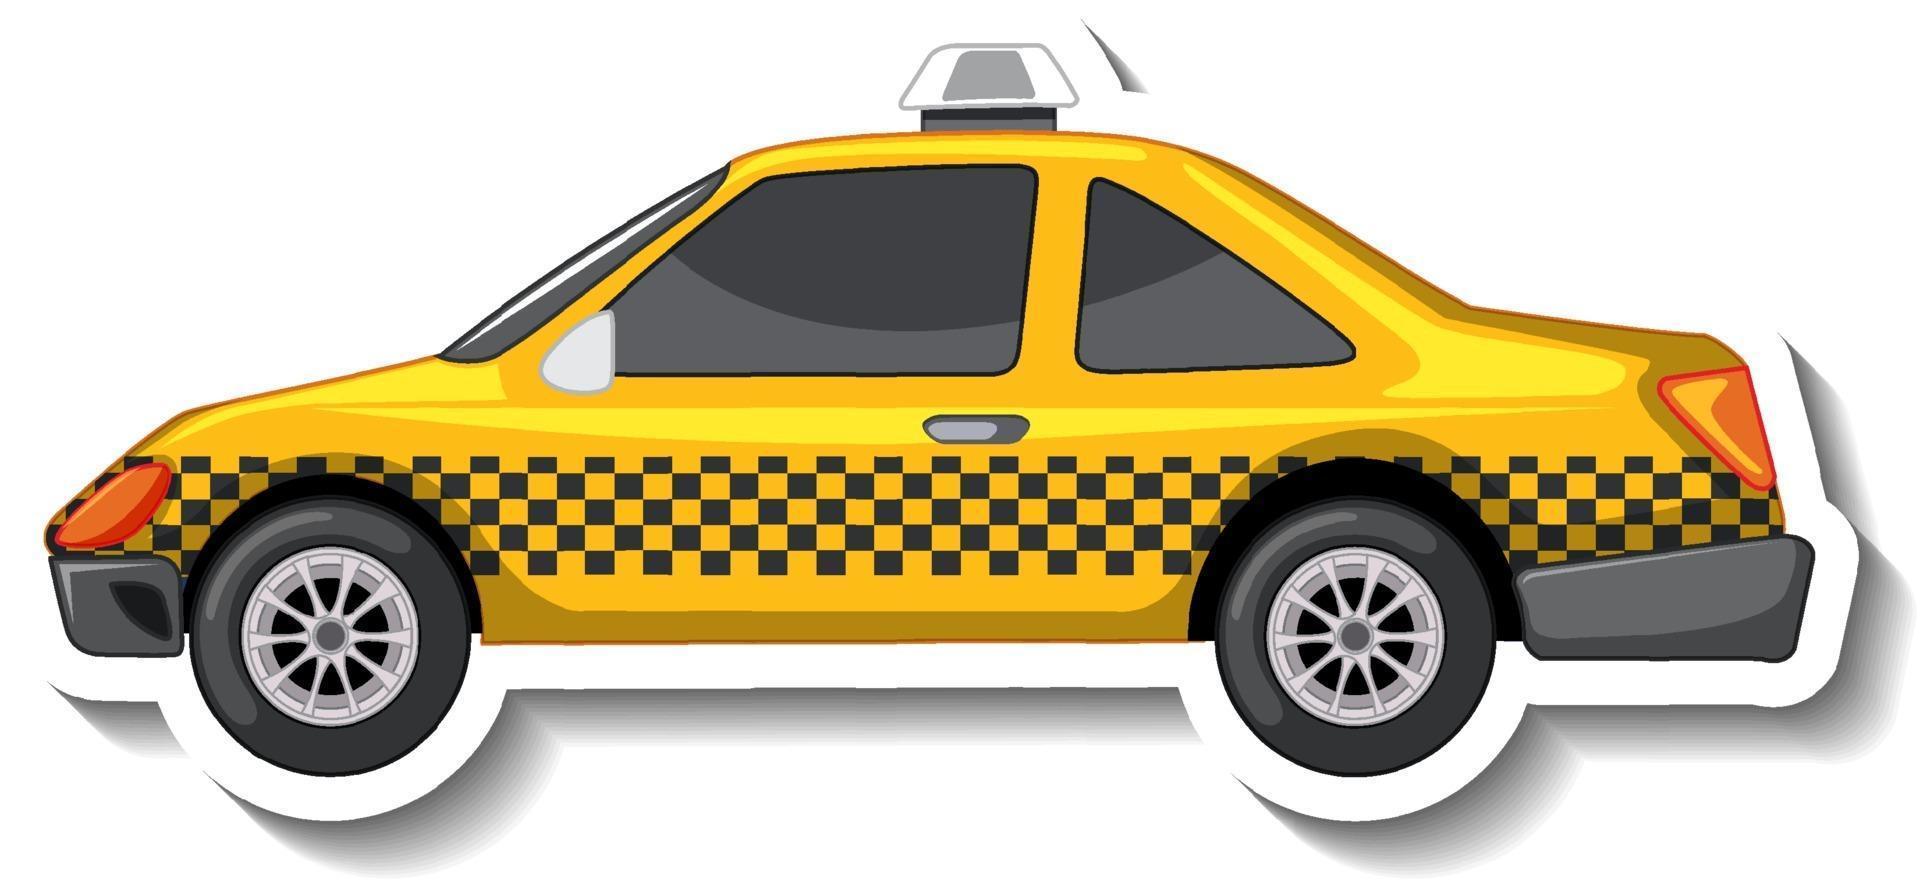 Conception d'autocollants avec vue latérale d'une voiture de taxi isolée vecteur